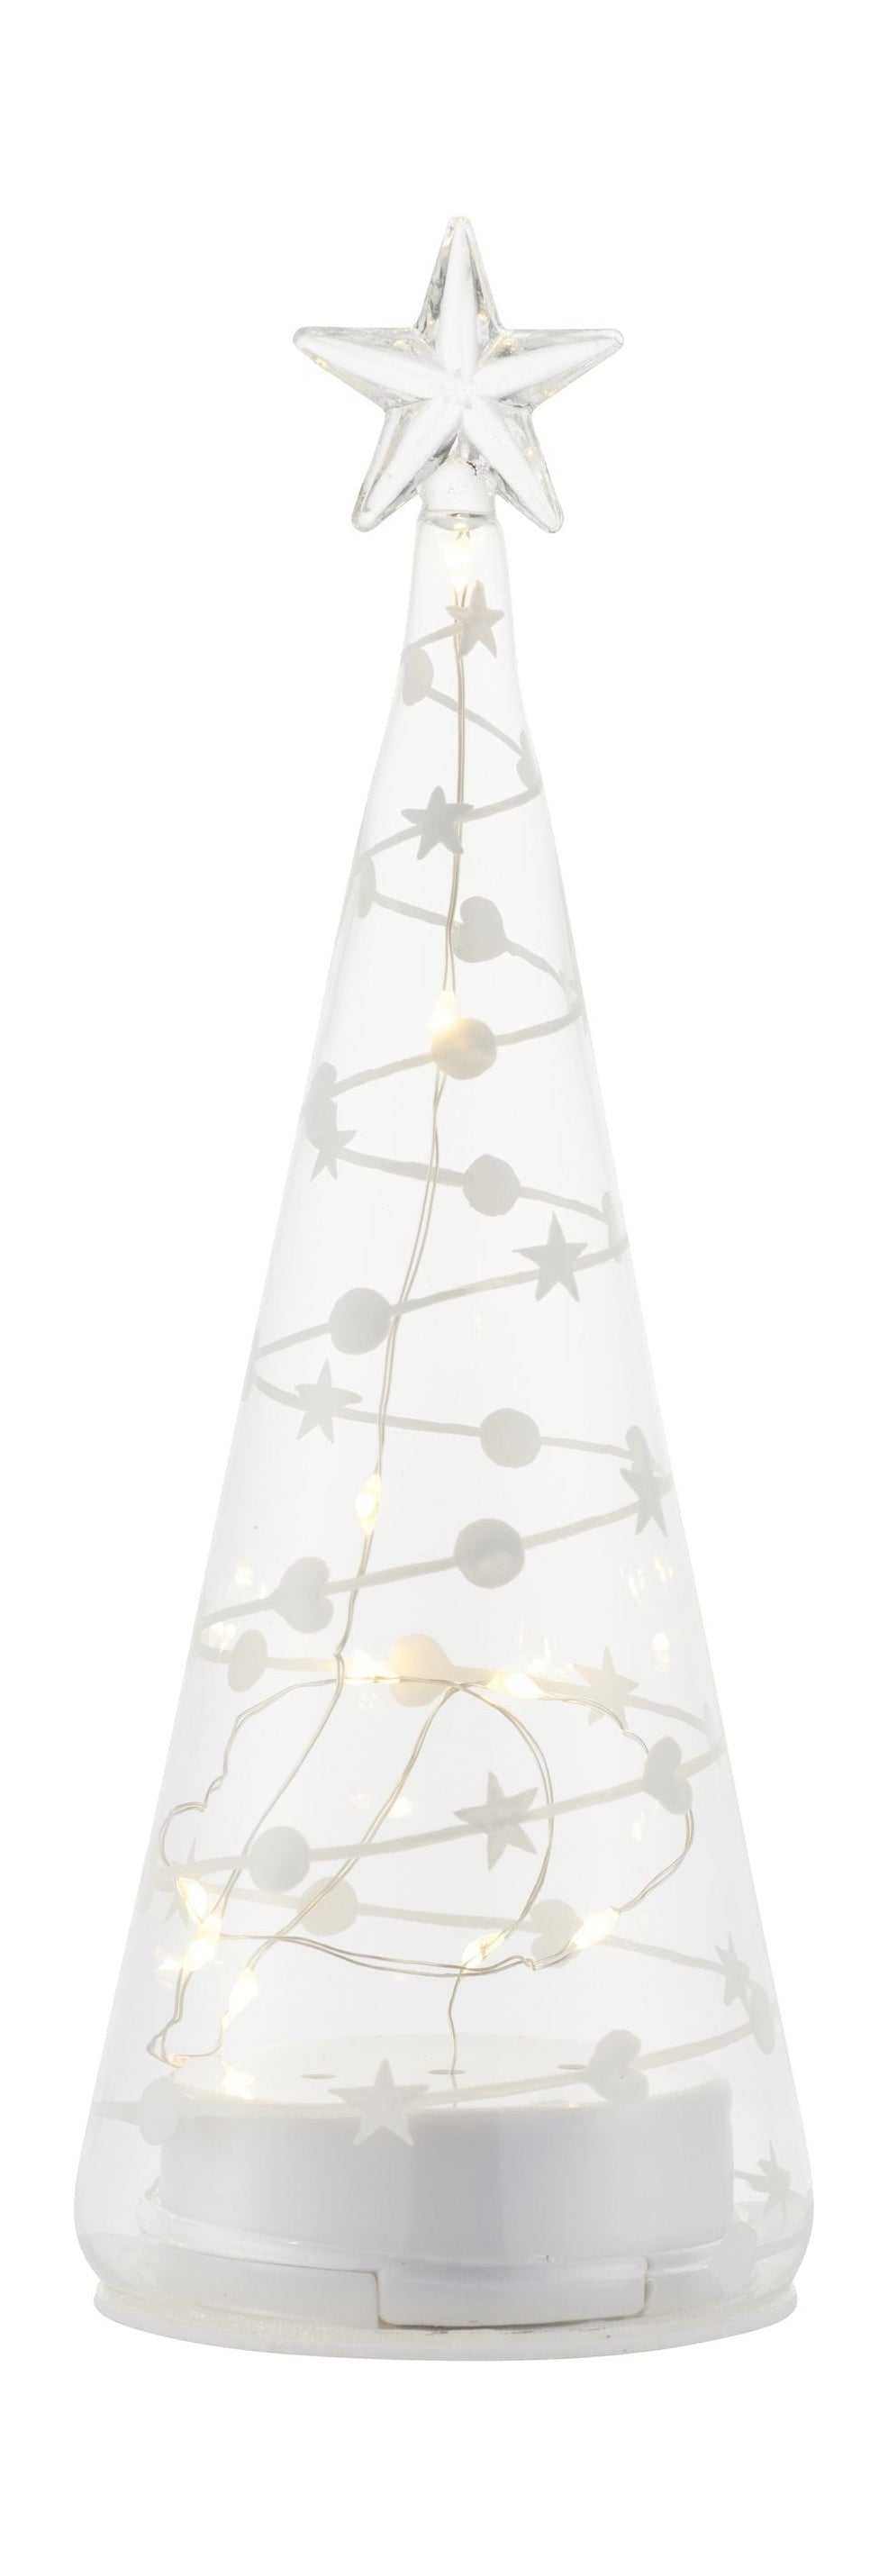 Sirius süßer Weihnachtsbaum, H22 cm, weiß/klar